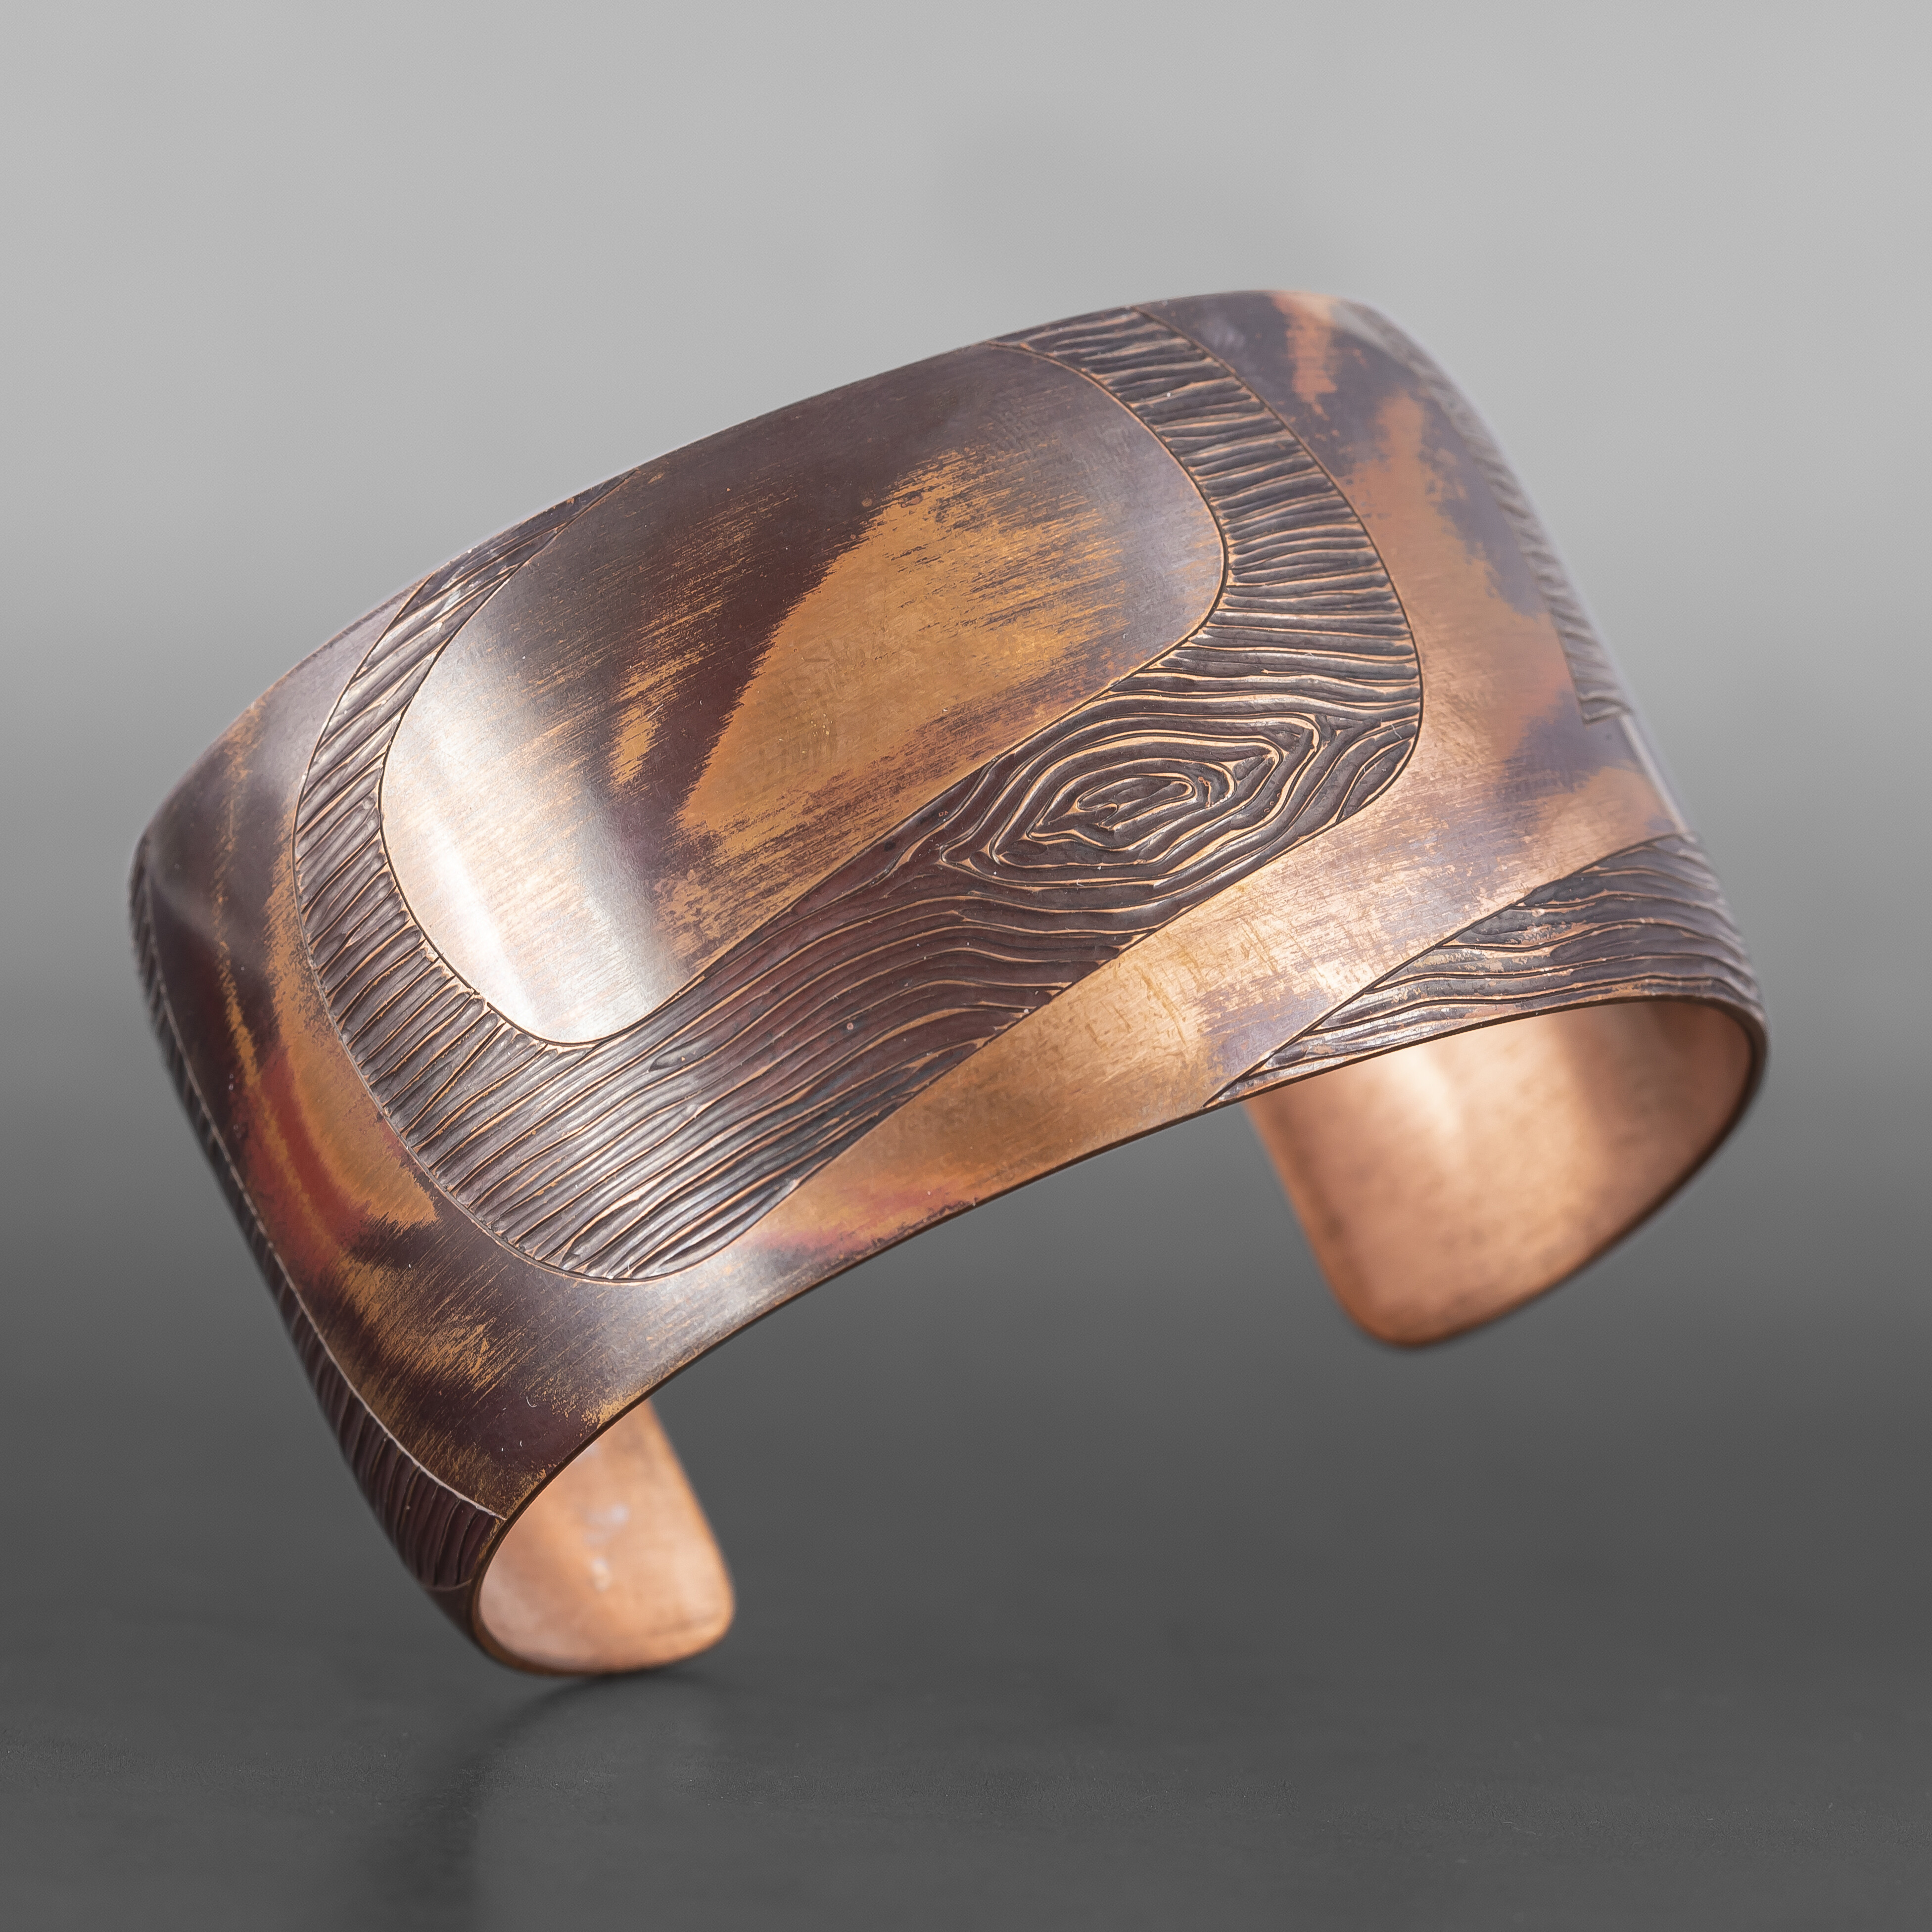 Wood Grain Eagle Bracelet
Jennifer Younger
Tlingit
Copper
6" x 1½”
$550